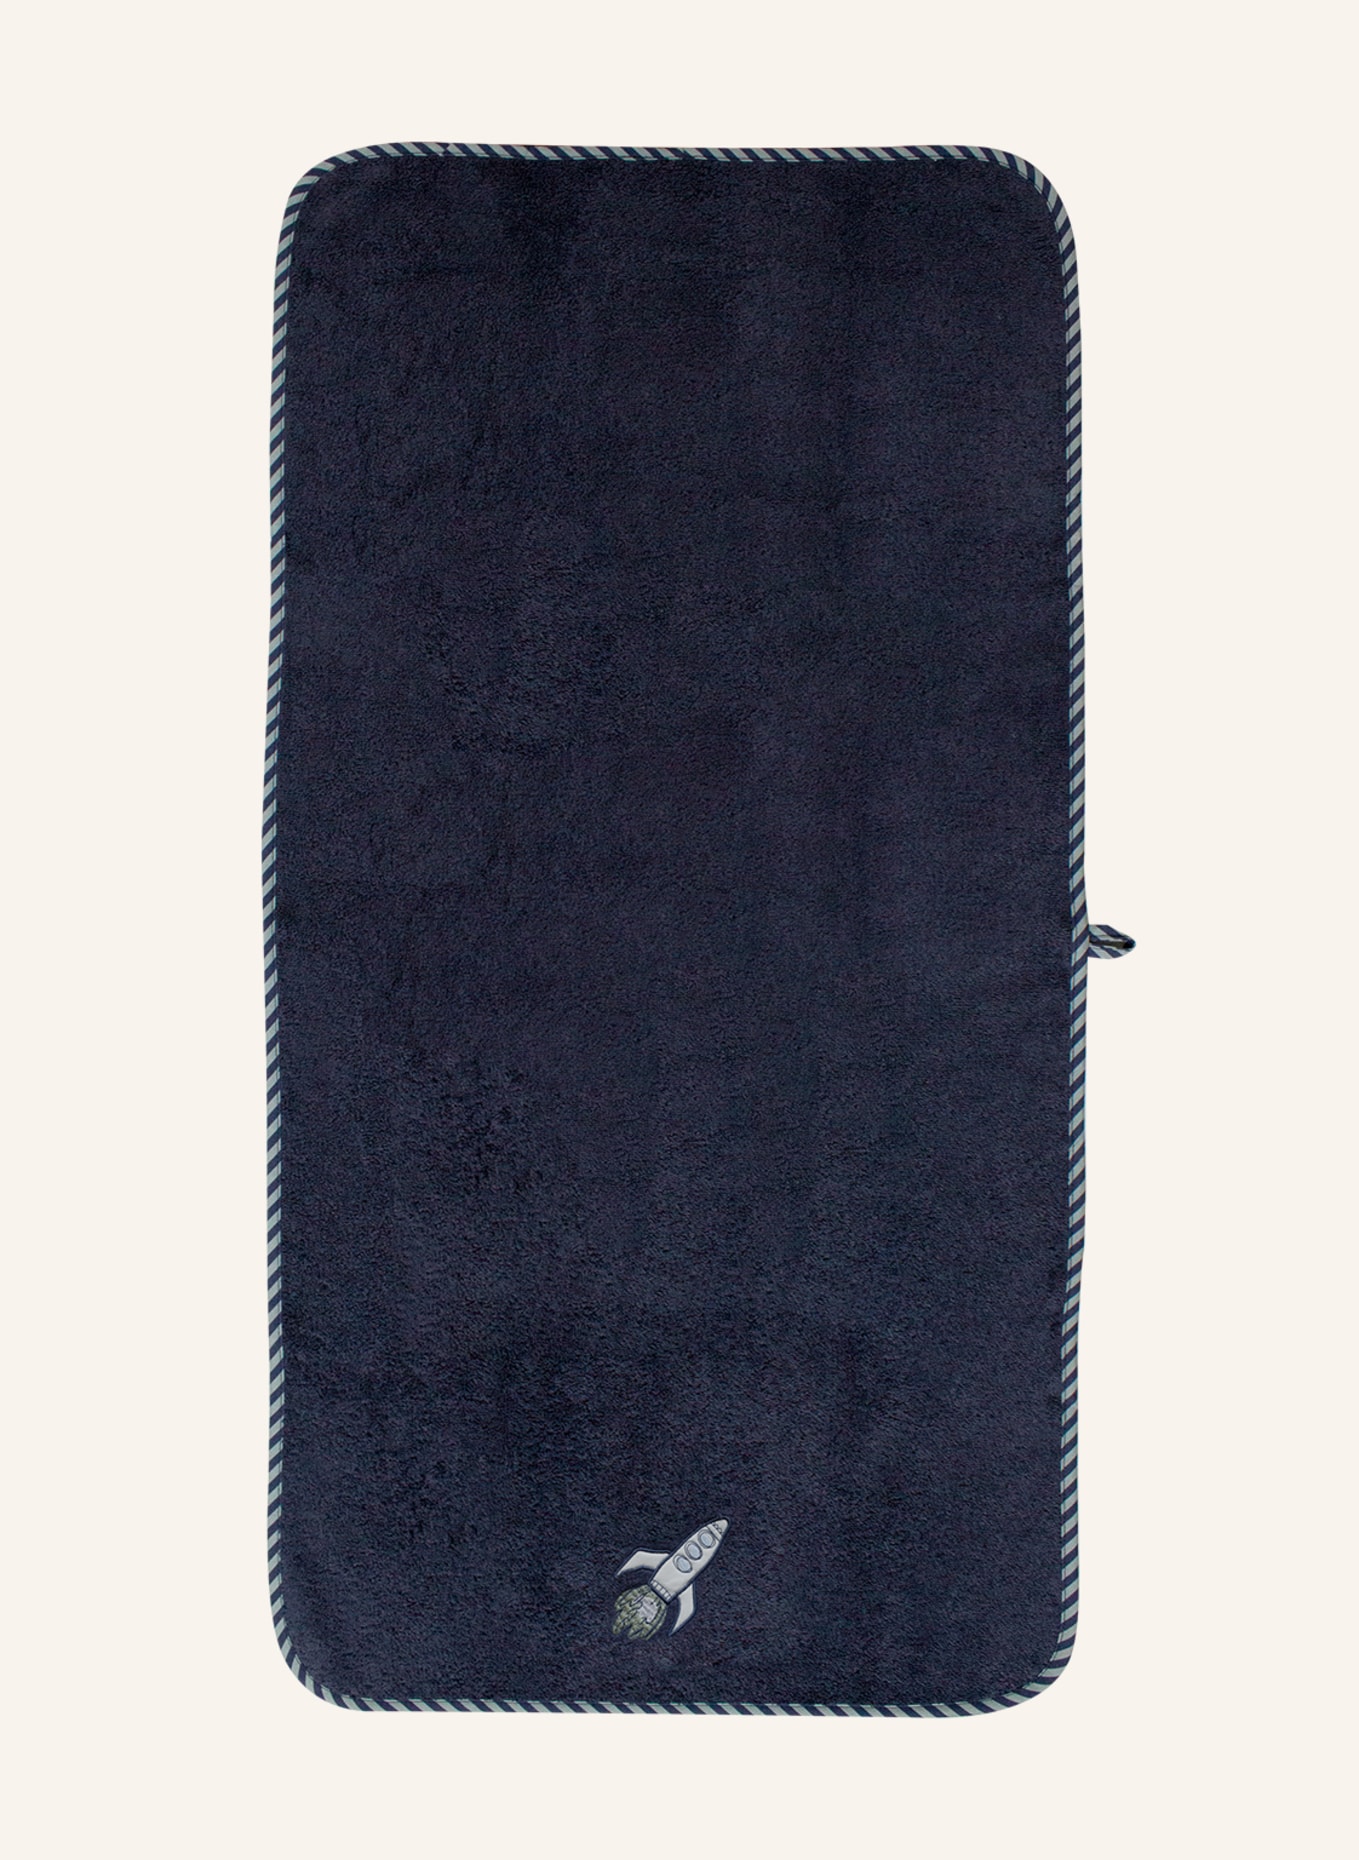 KATHA Covers Handtuch RAKETE, Farbe: BLAU (Bild 1)